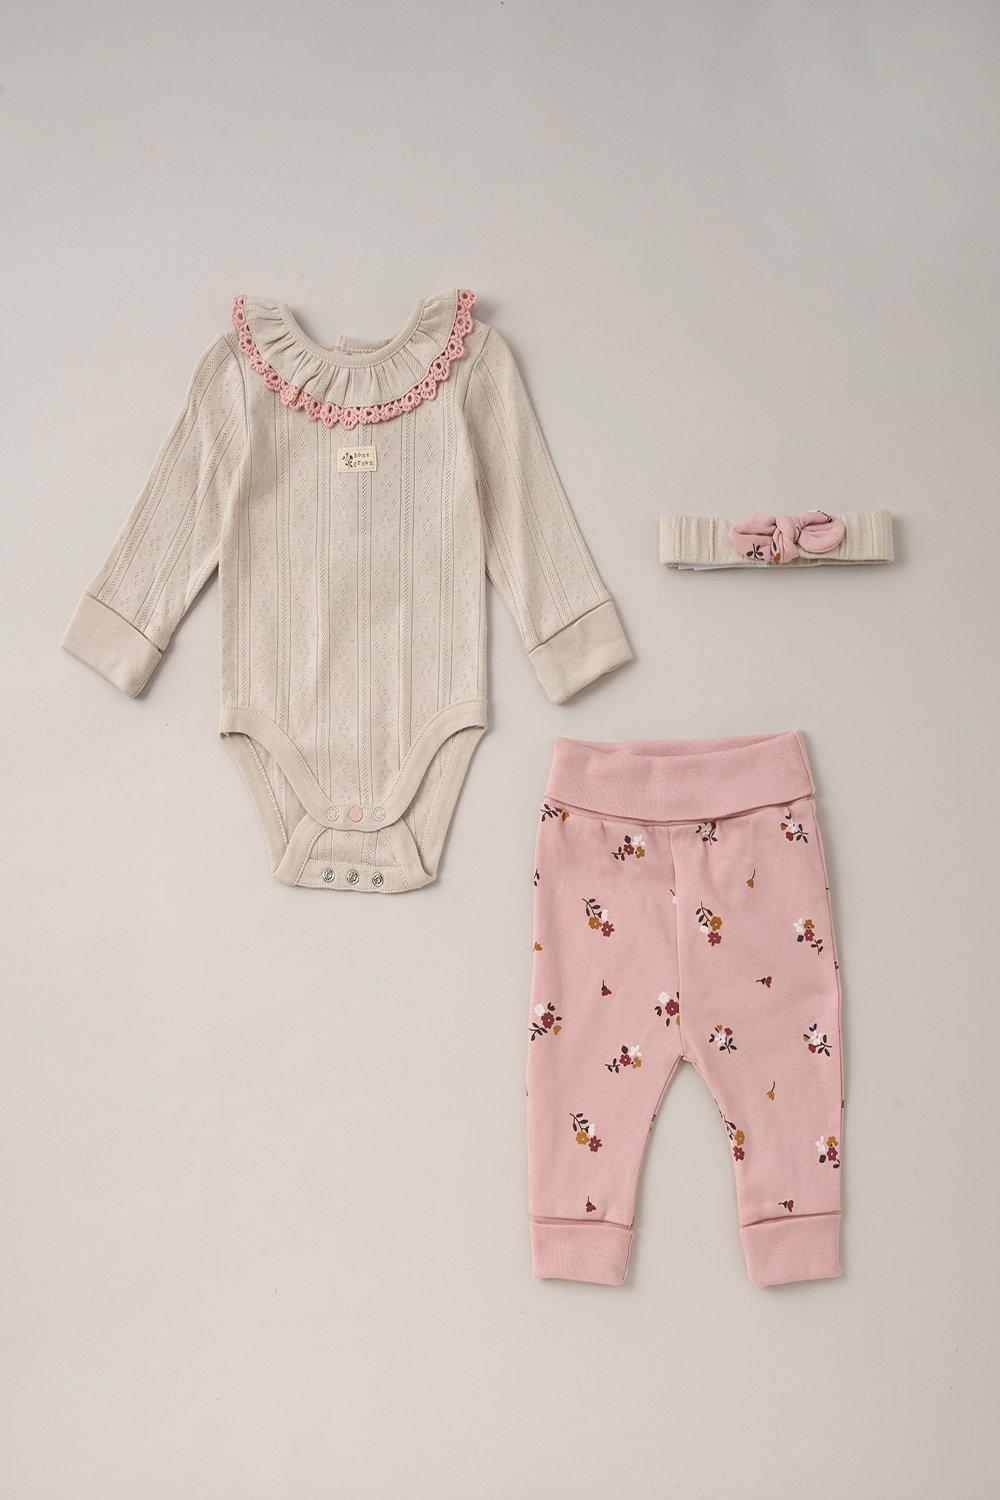 Хлопковое боди, брюки и повязка на голову, комплект из 3 предметов Homegrown, розовый